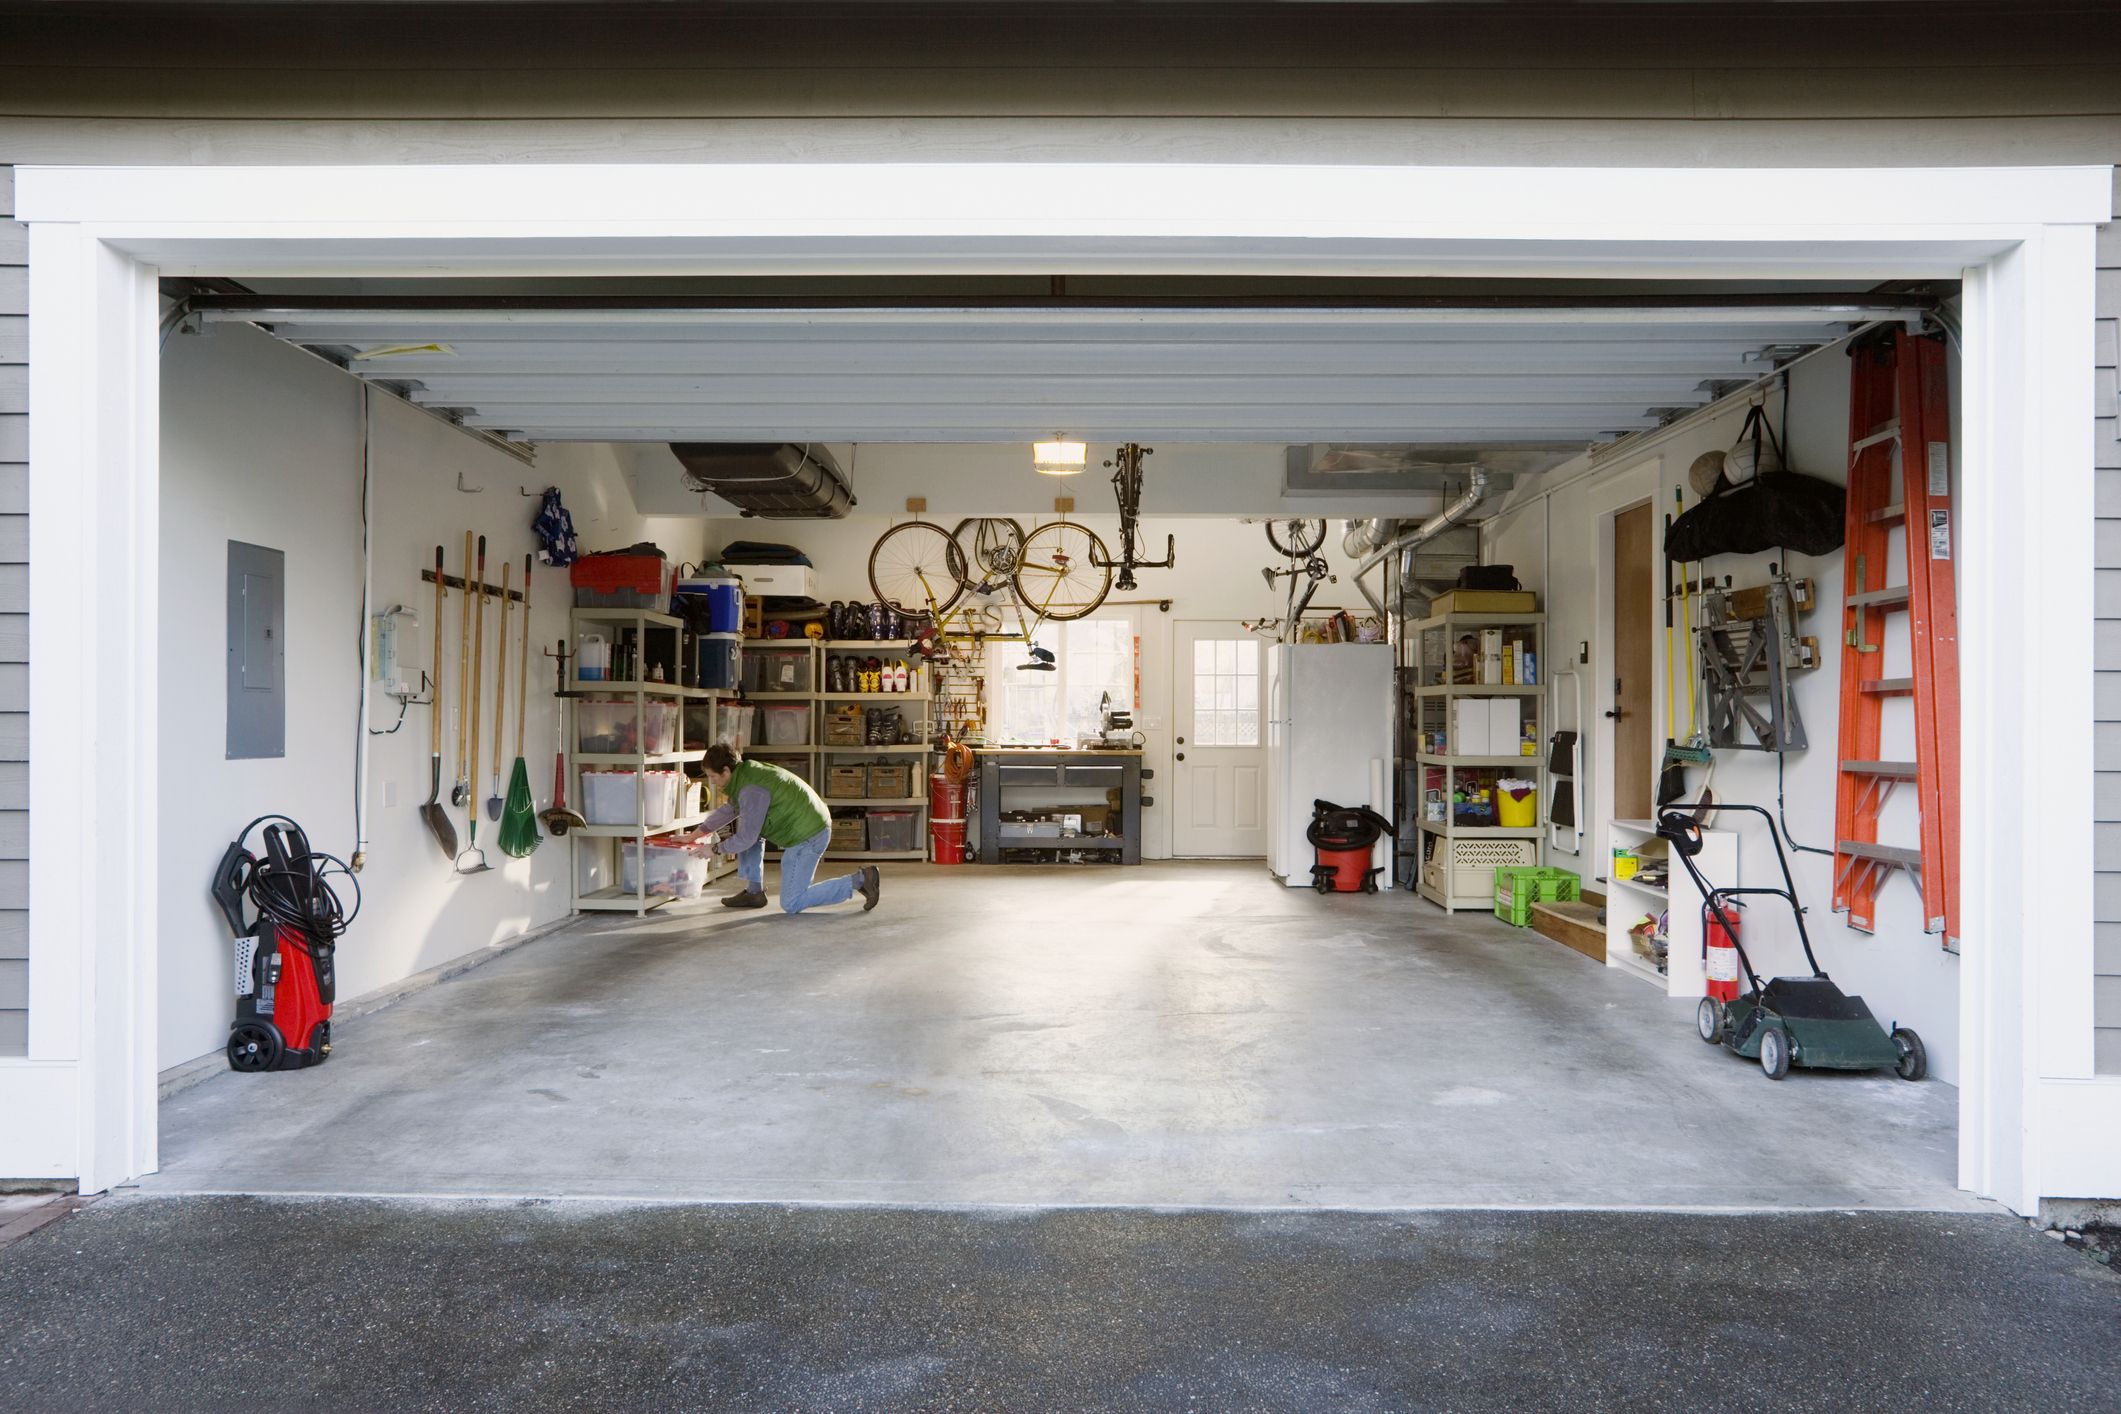 40 Garage Organization Ideas - DIY Garage Storage Ideas